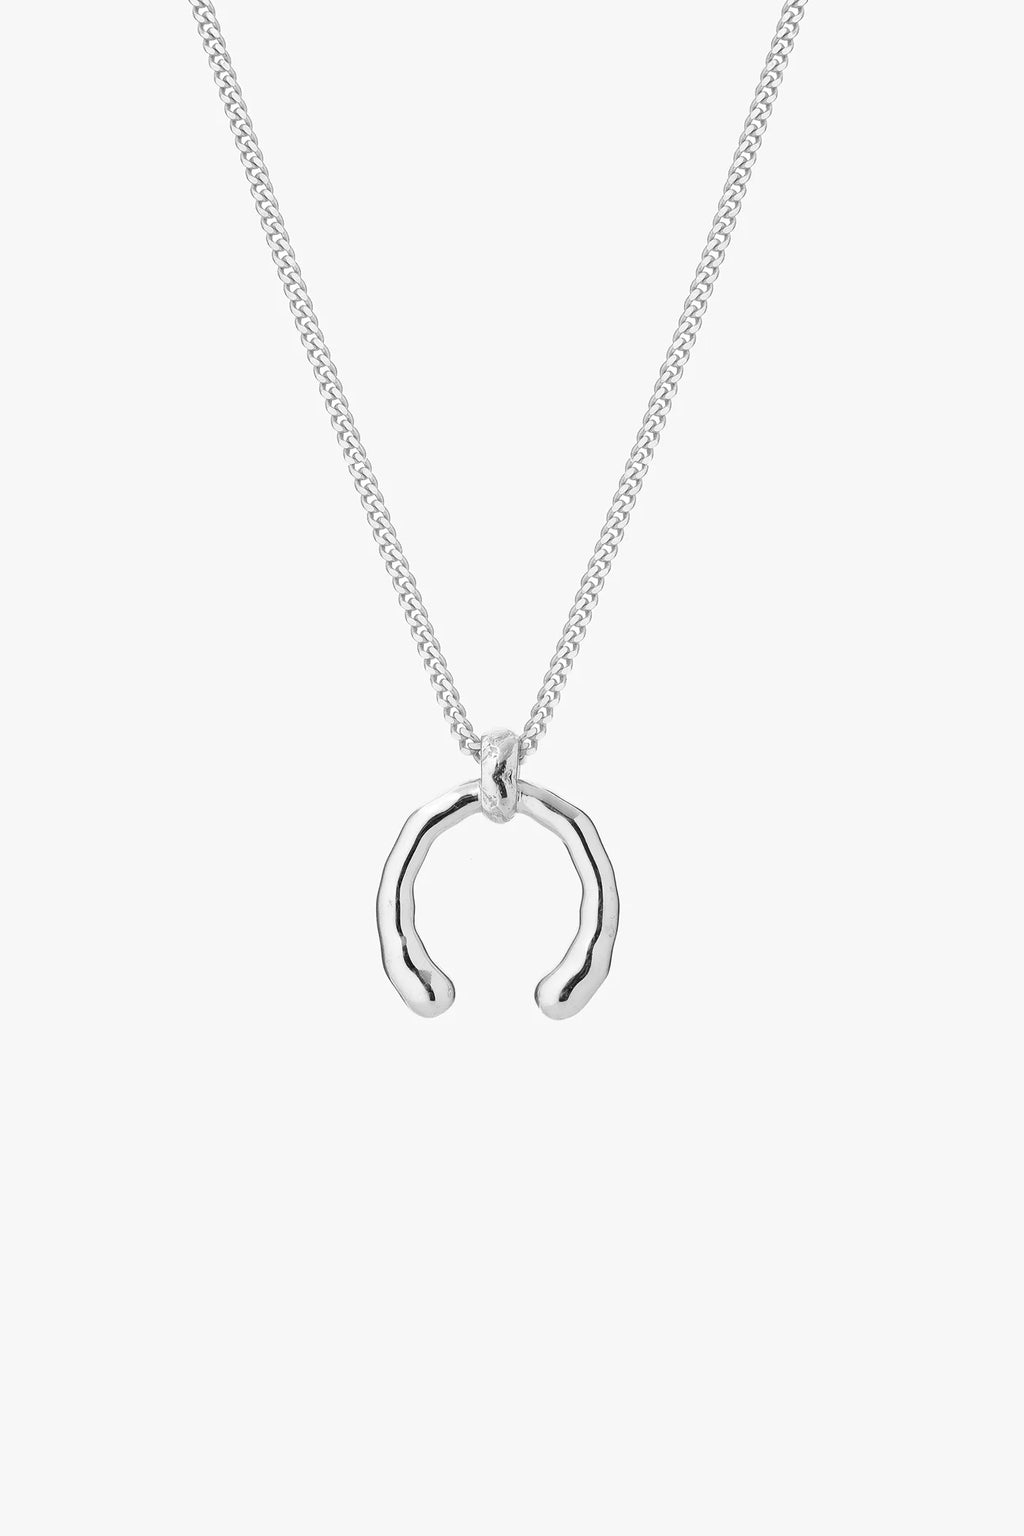 Tutti & Co Dew Necklace - Silver